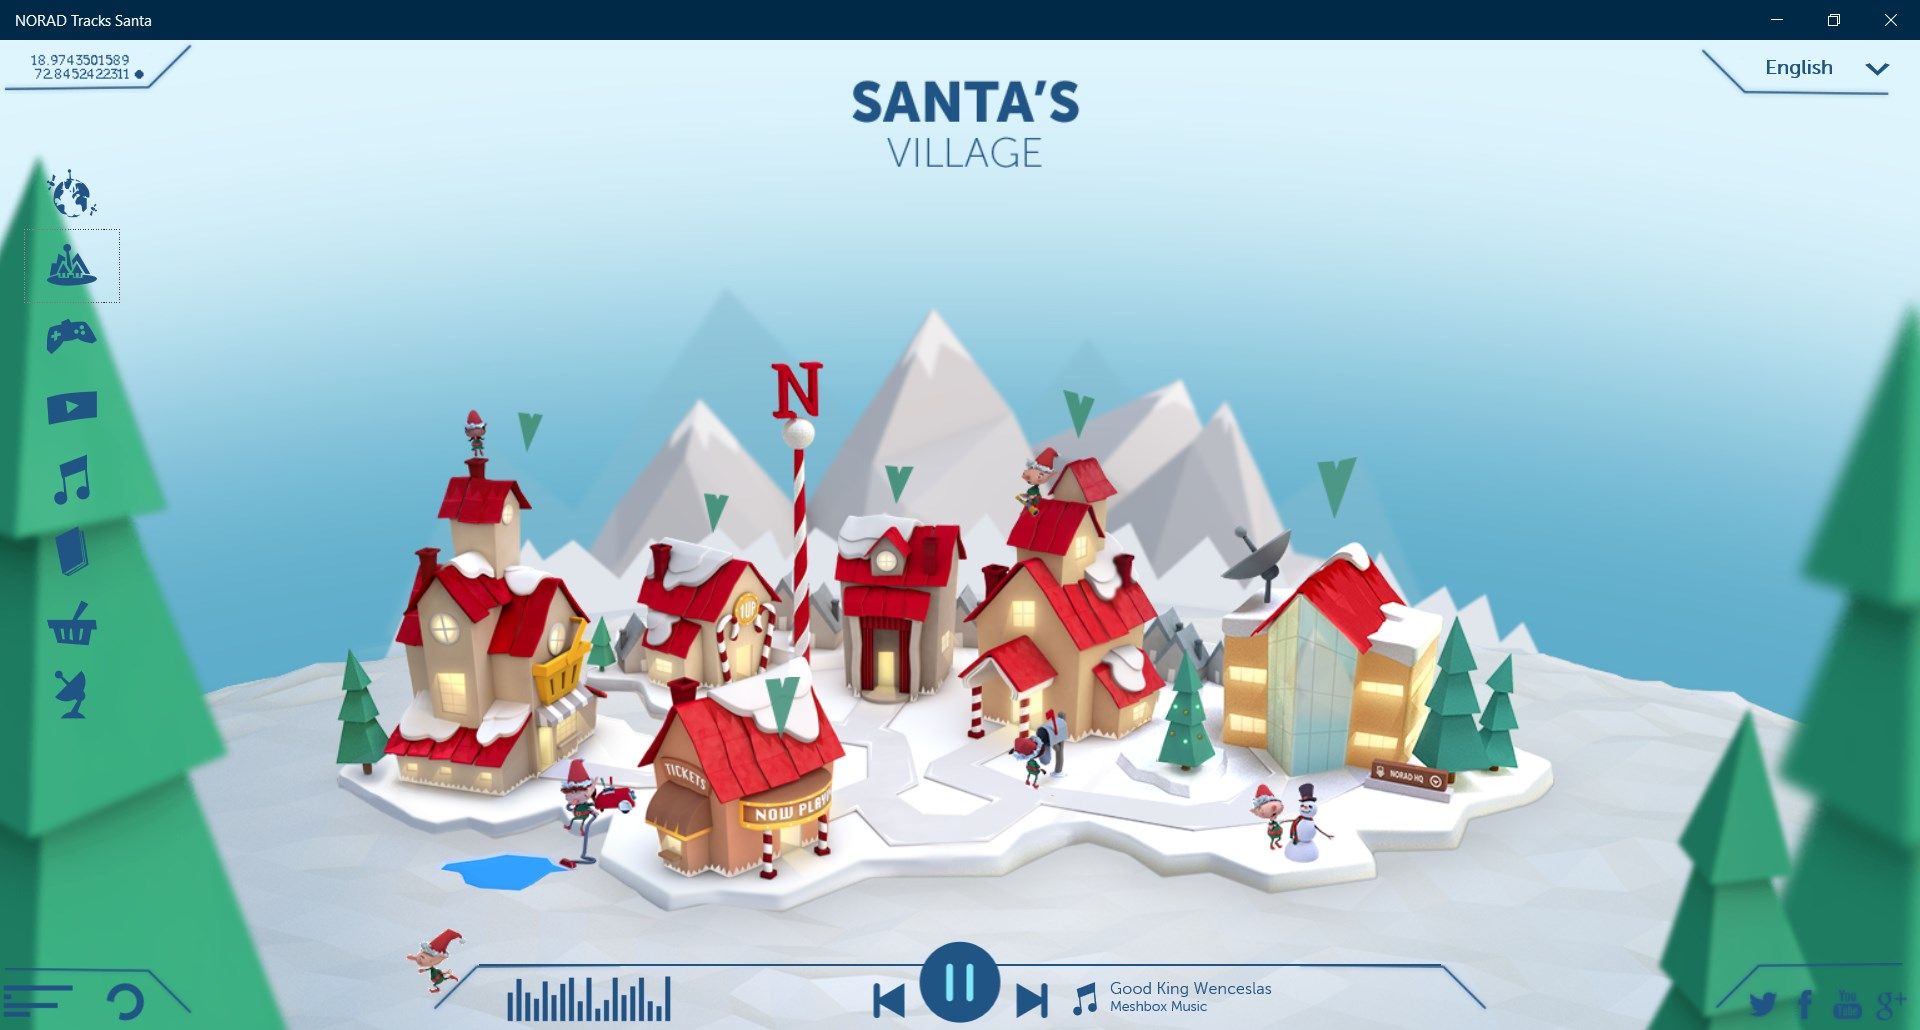 Santa's village